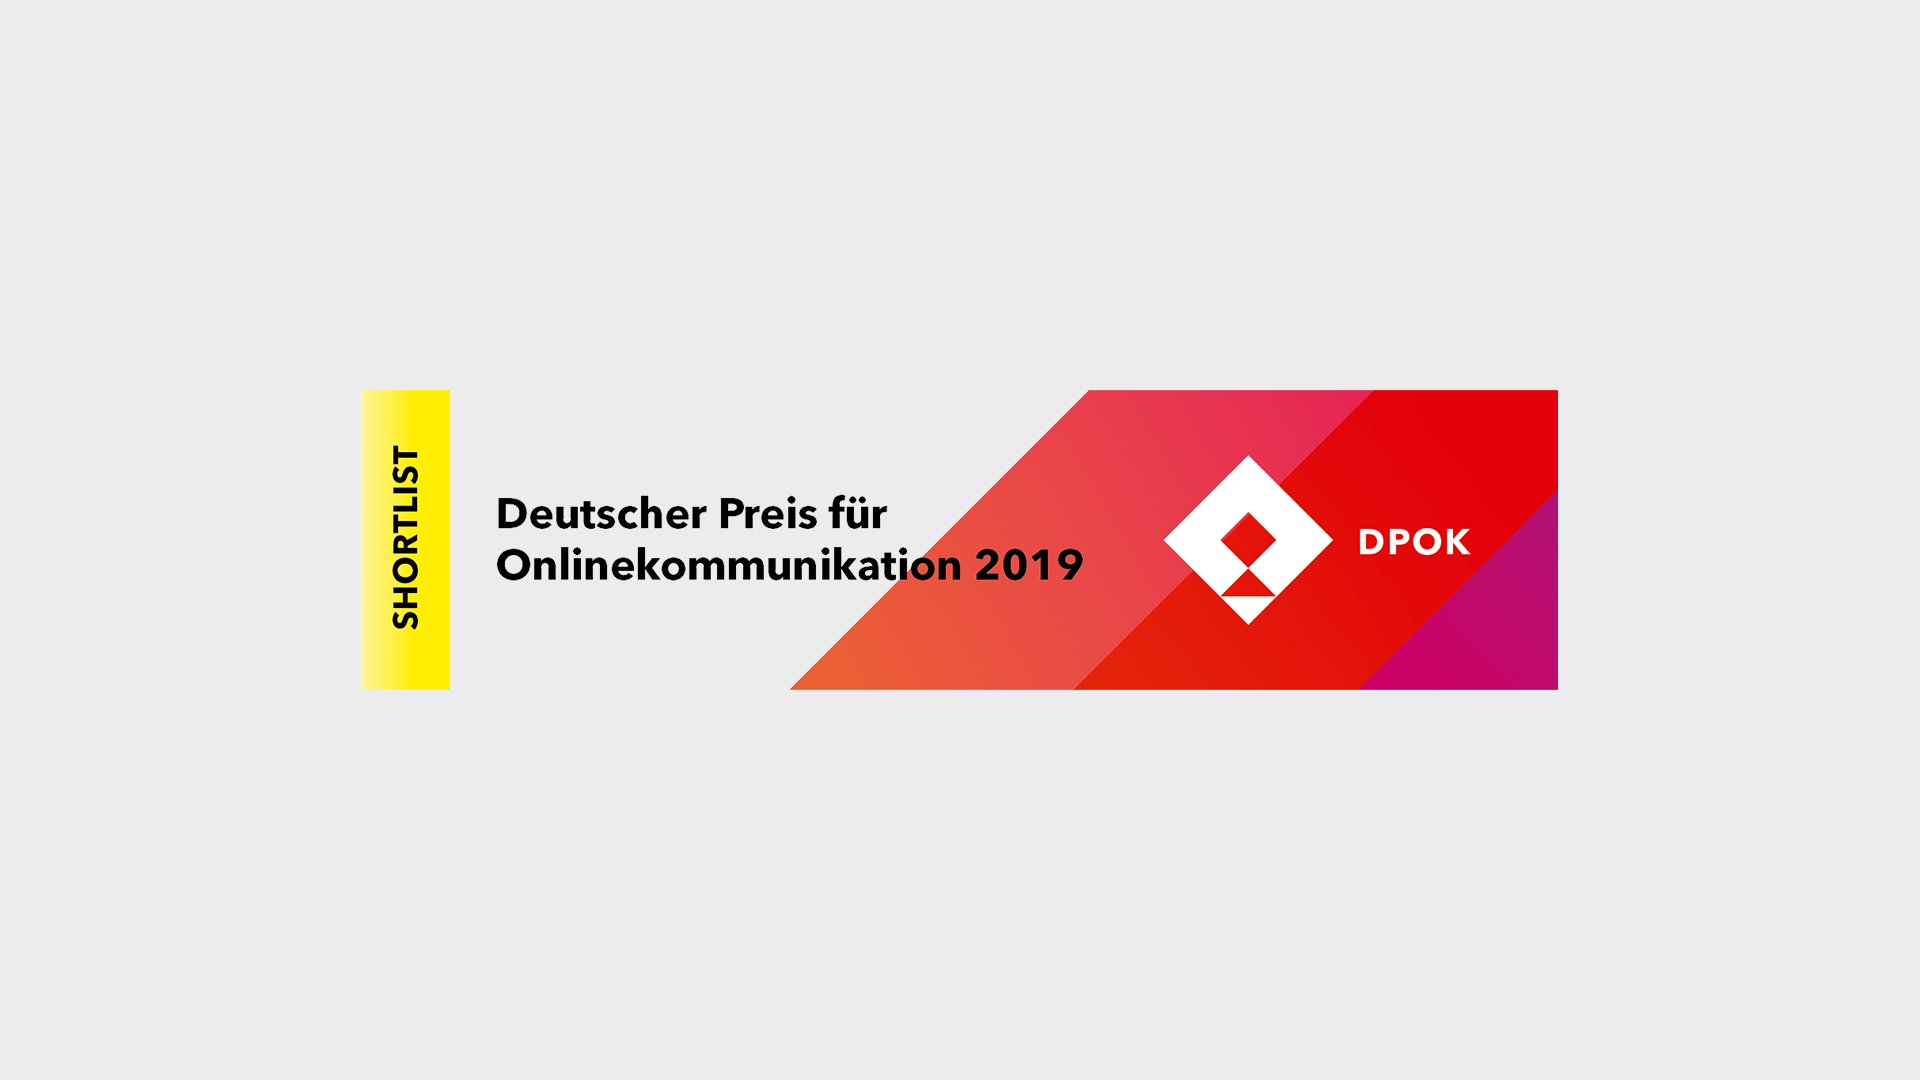 Deutscher Preis für Onlinekommunikation 2019